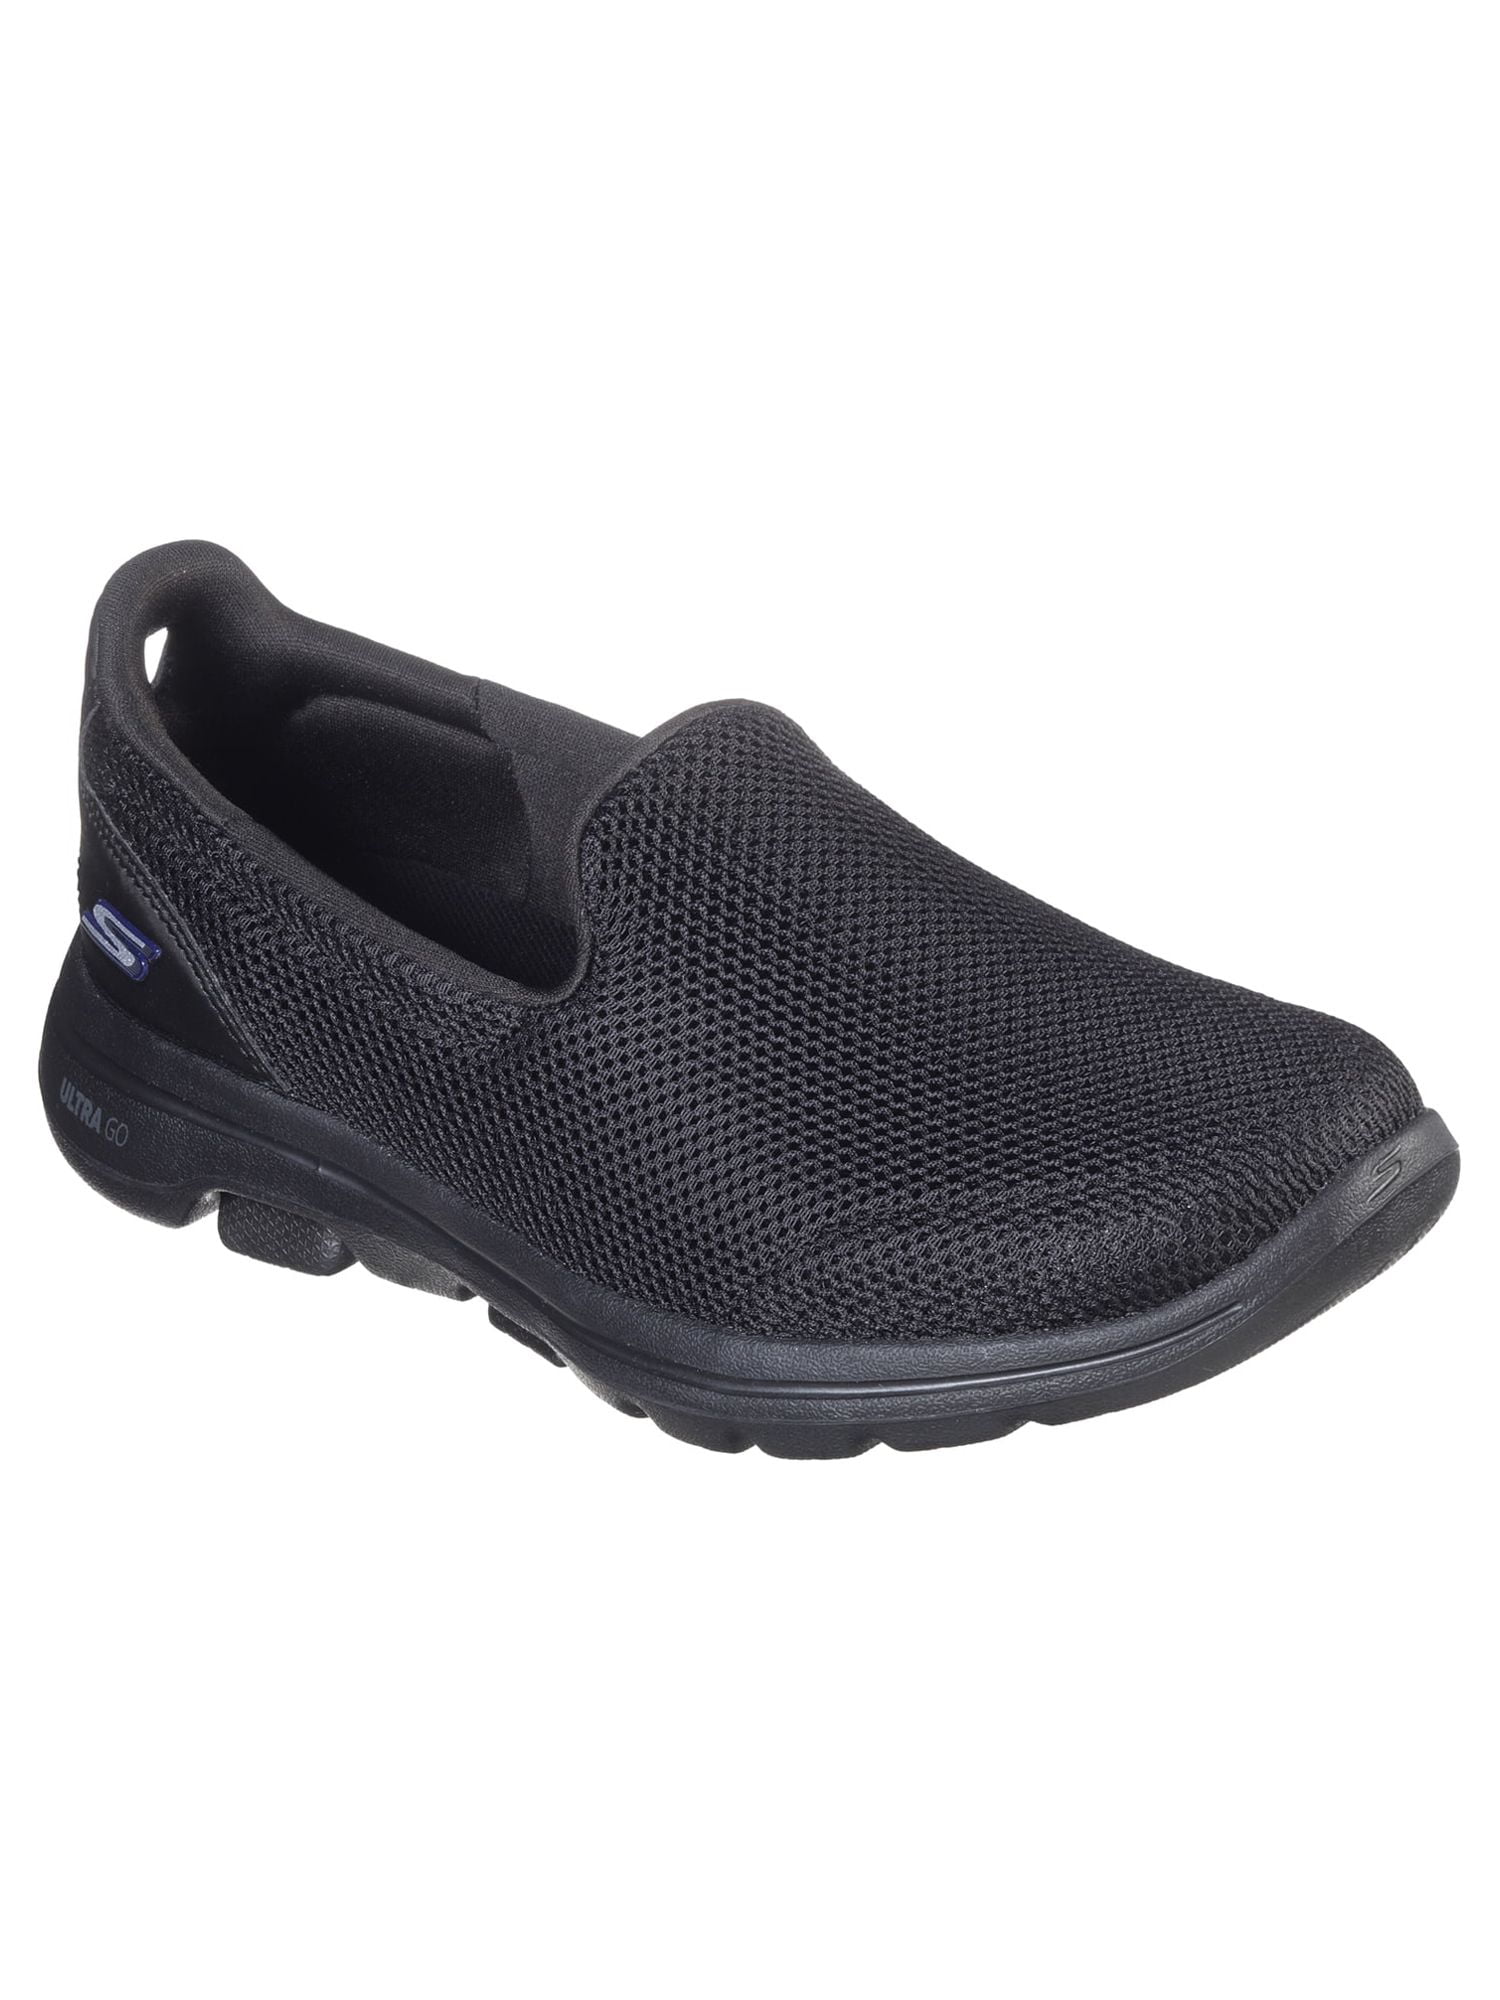 Skechers Women's GOwalk 5 Slip-on Comfort Shoe, Wide Width Available 